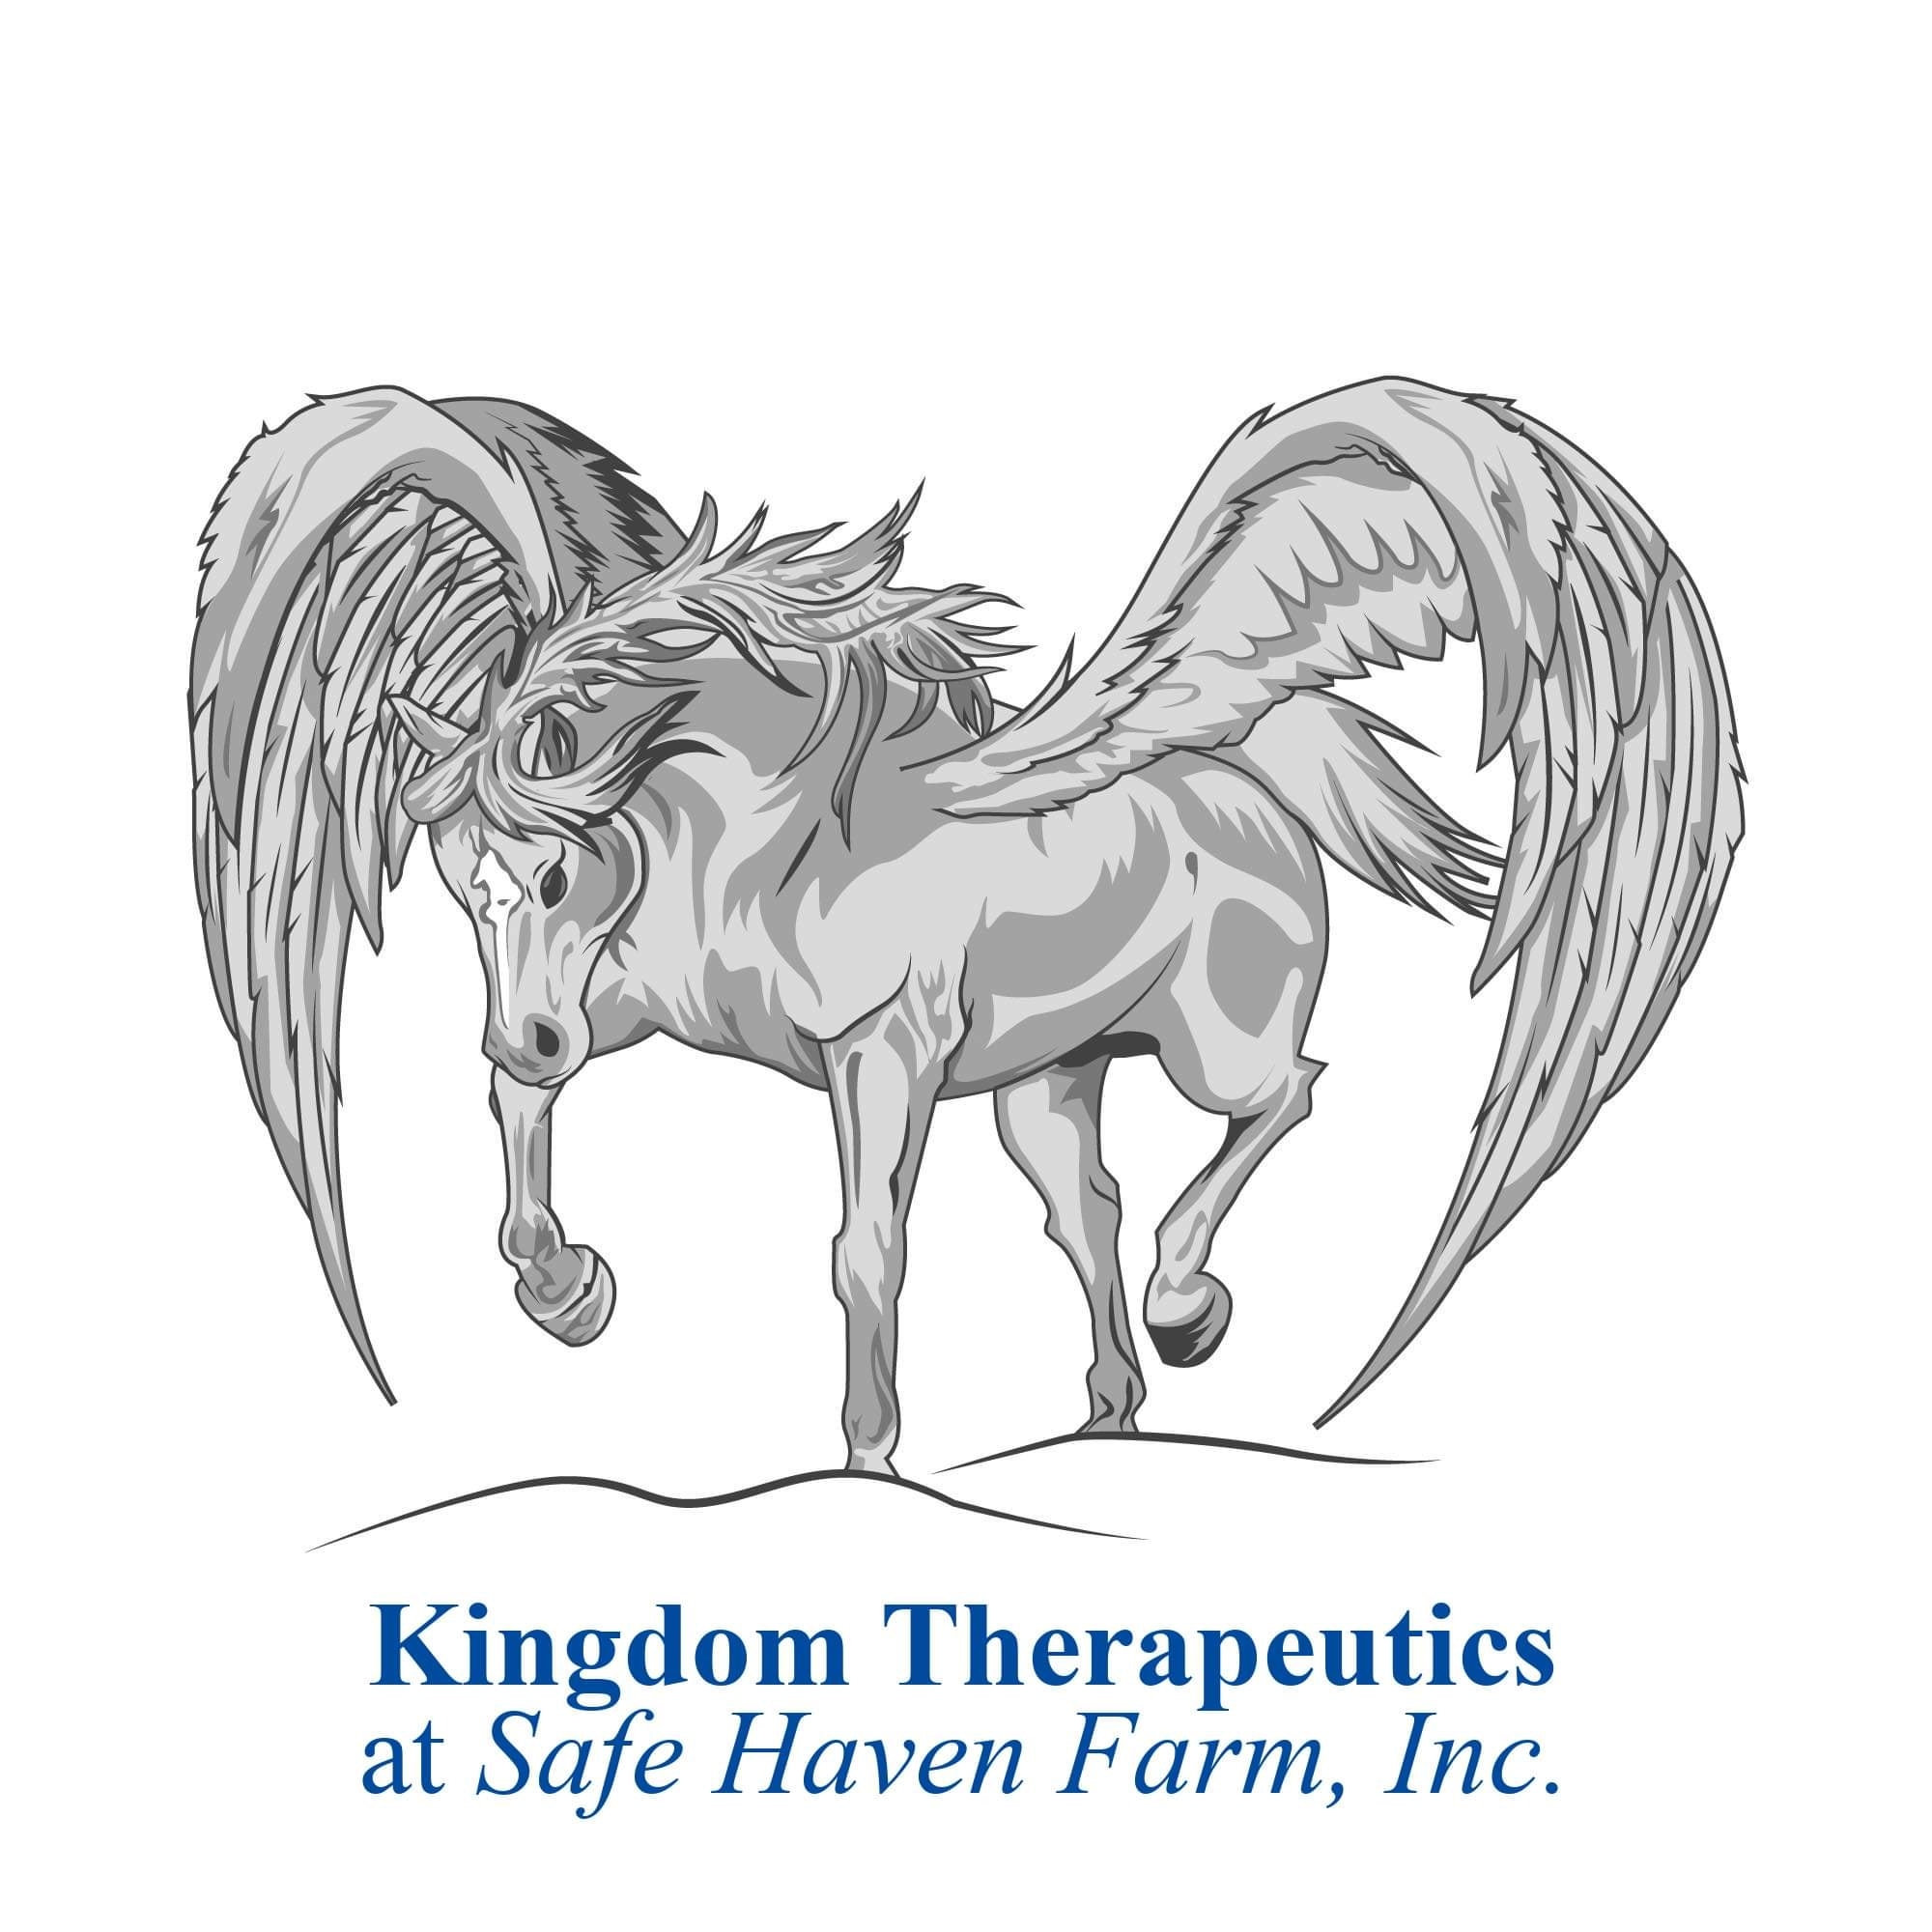 Kingdom Therapeutics at Safe Haven Farm, Incorporated